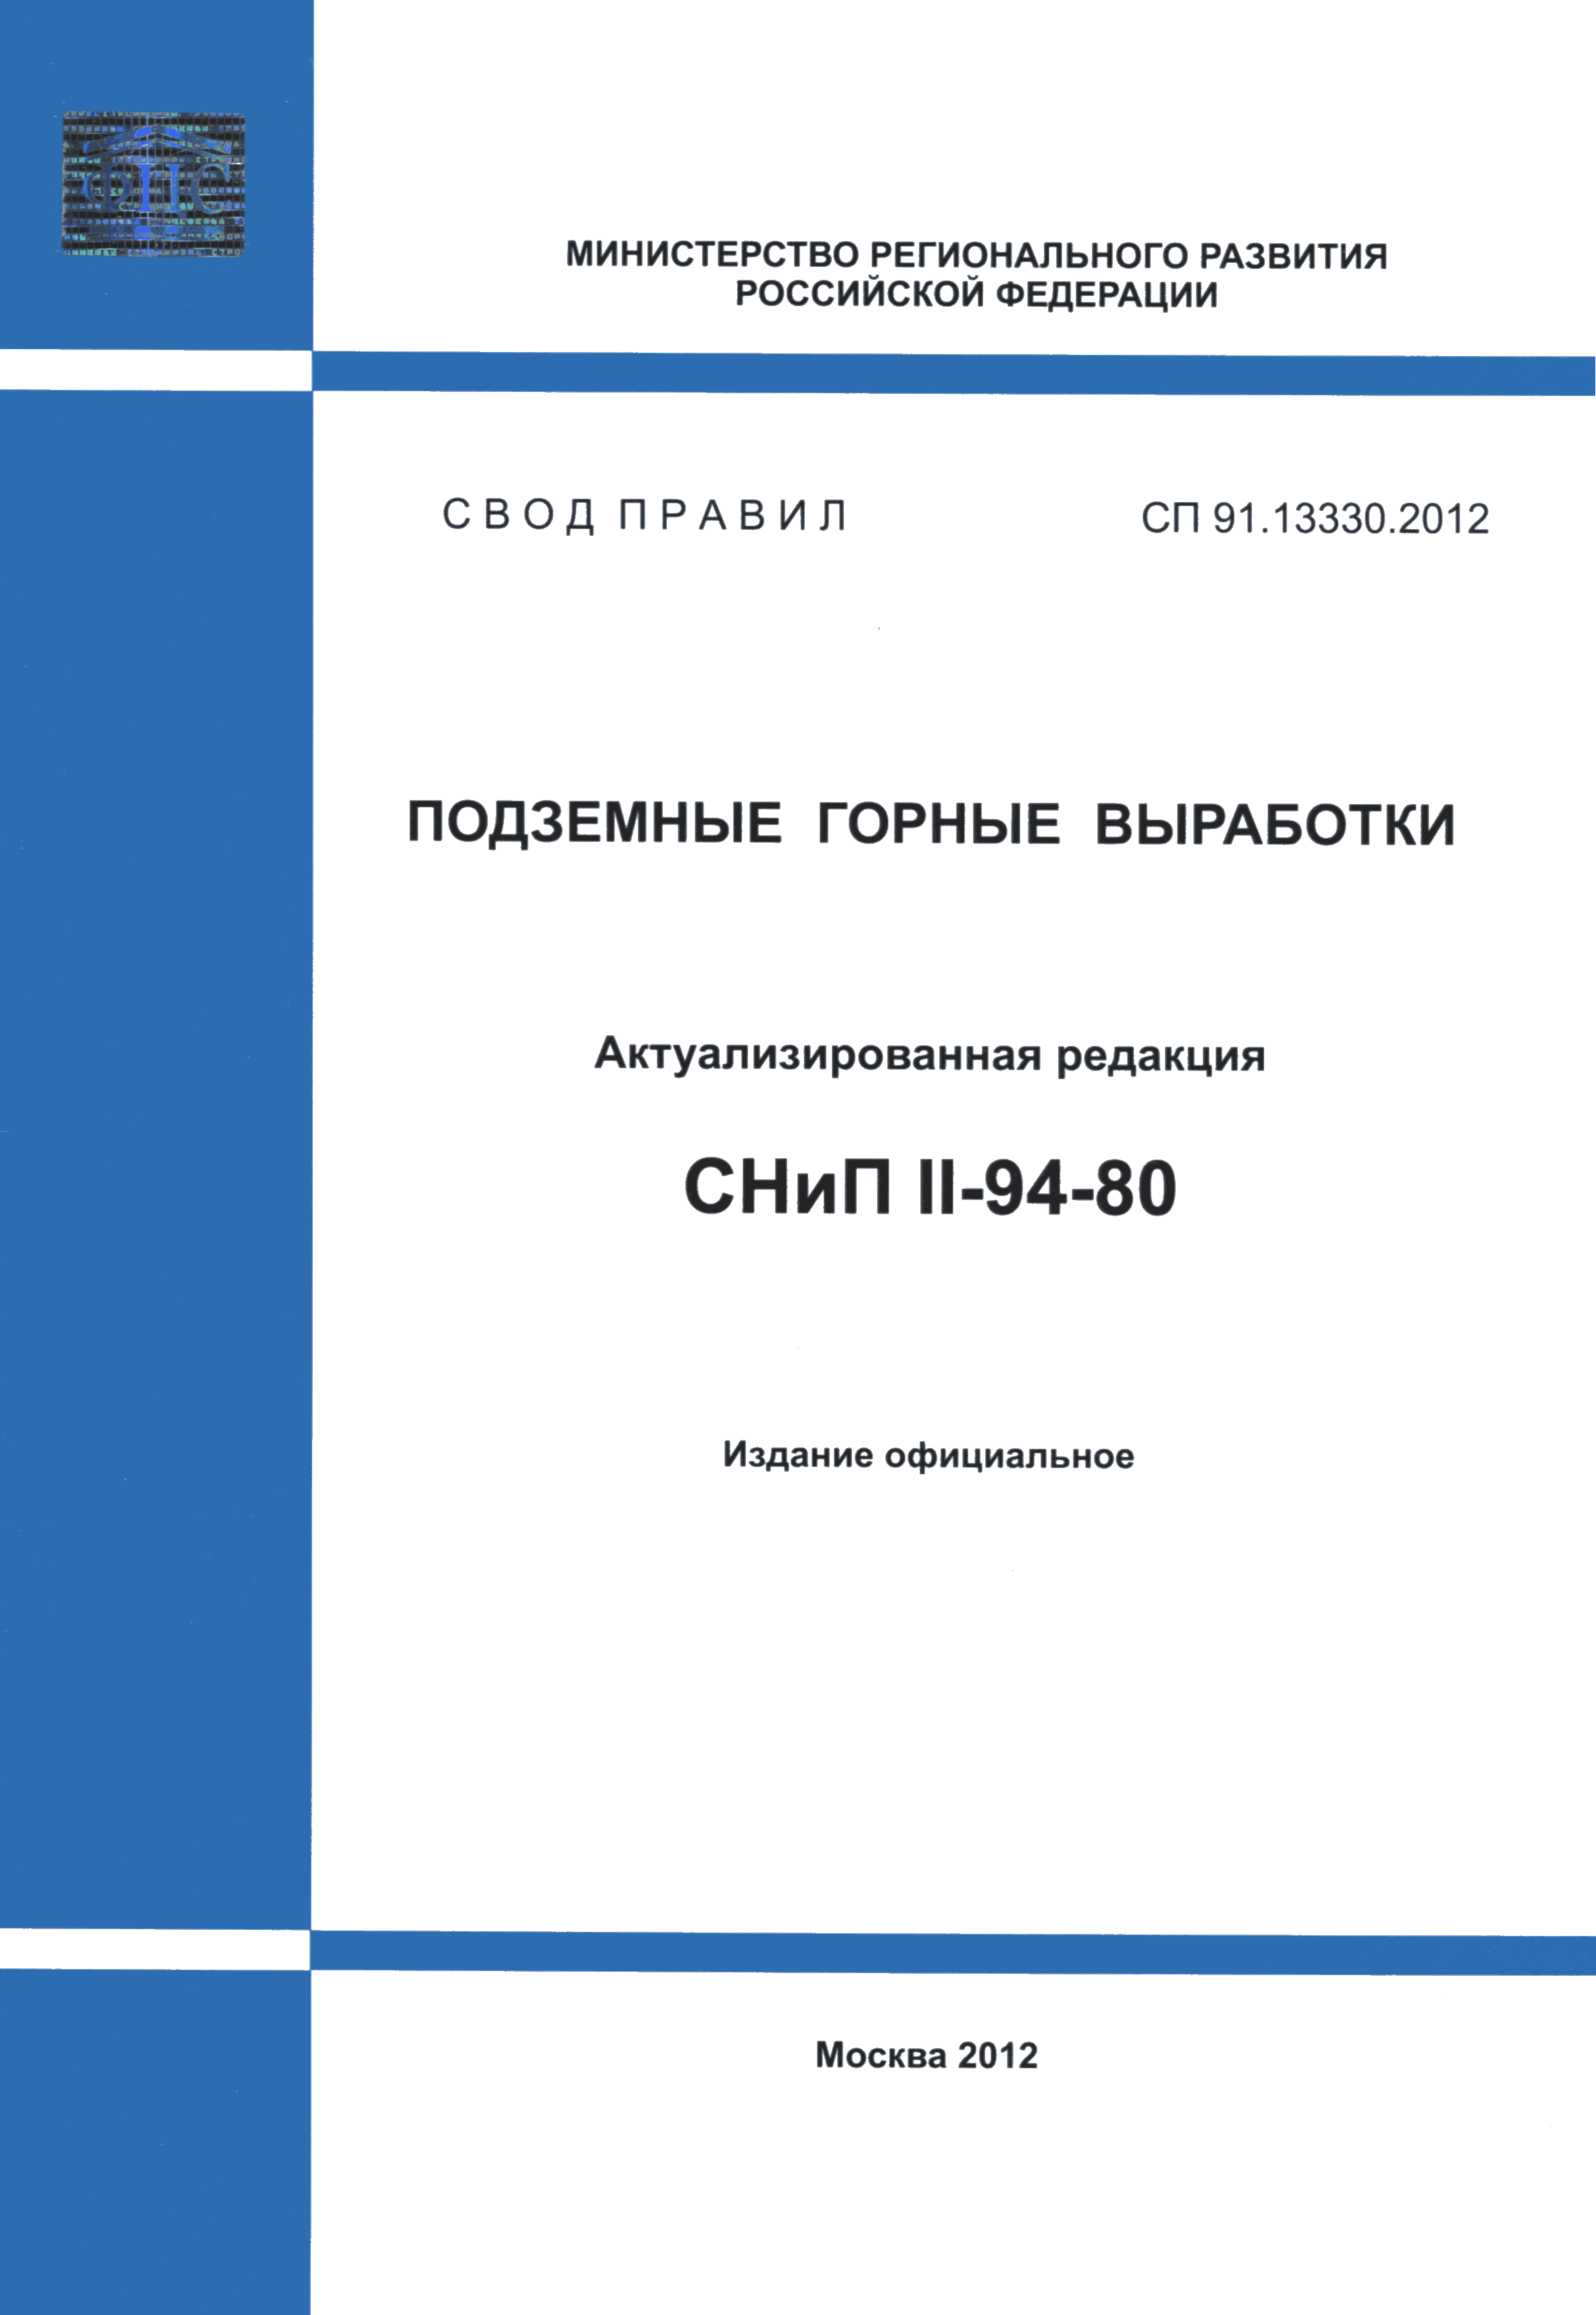 СП 91.13330.2012